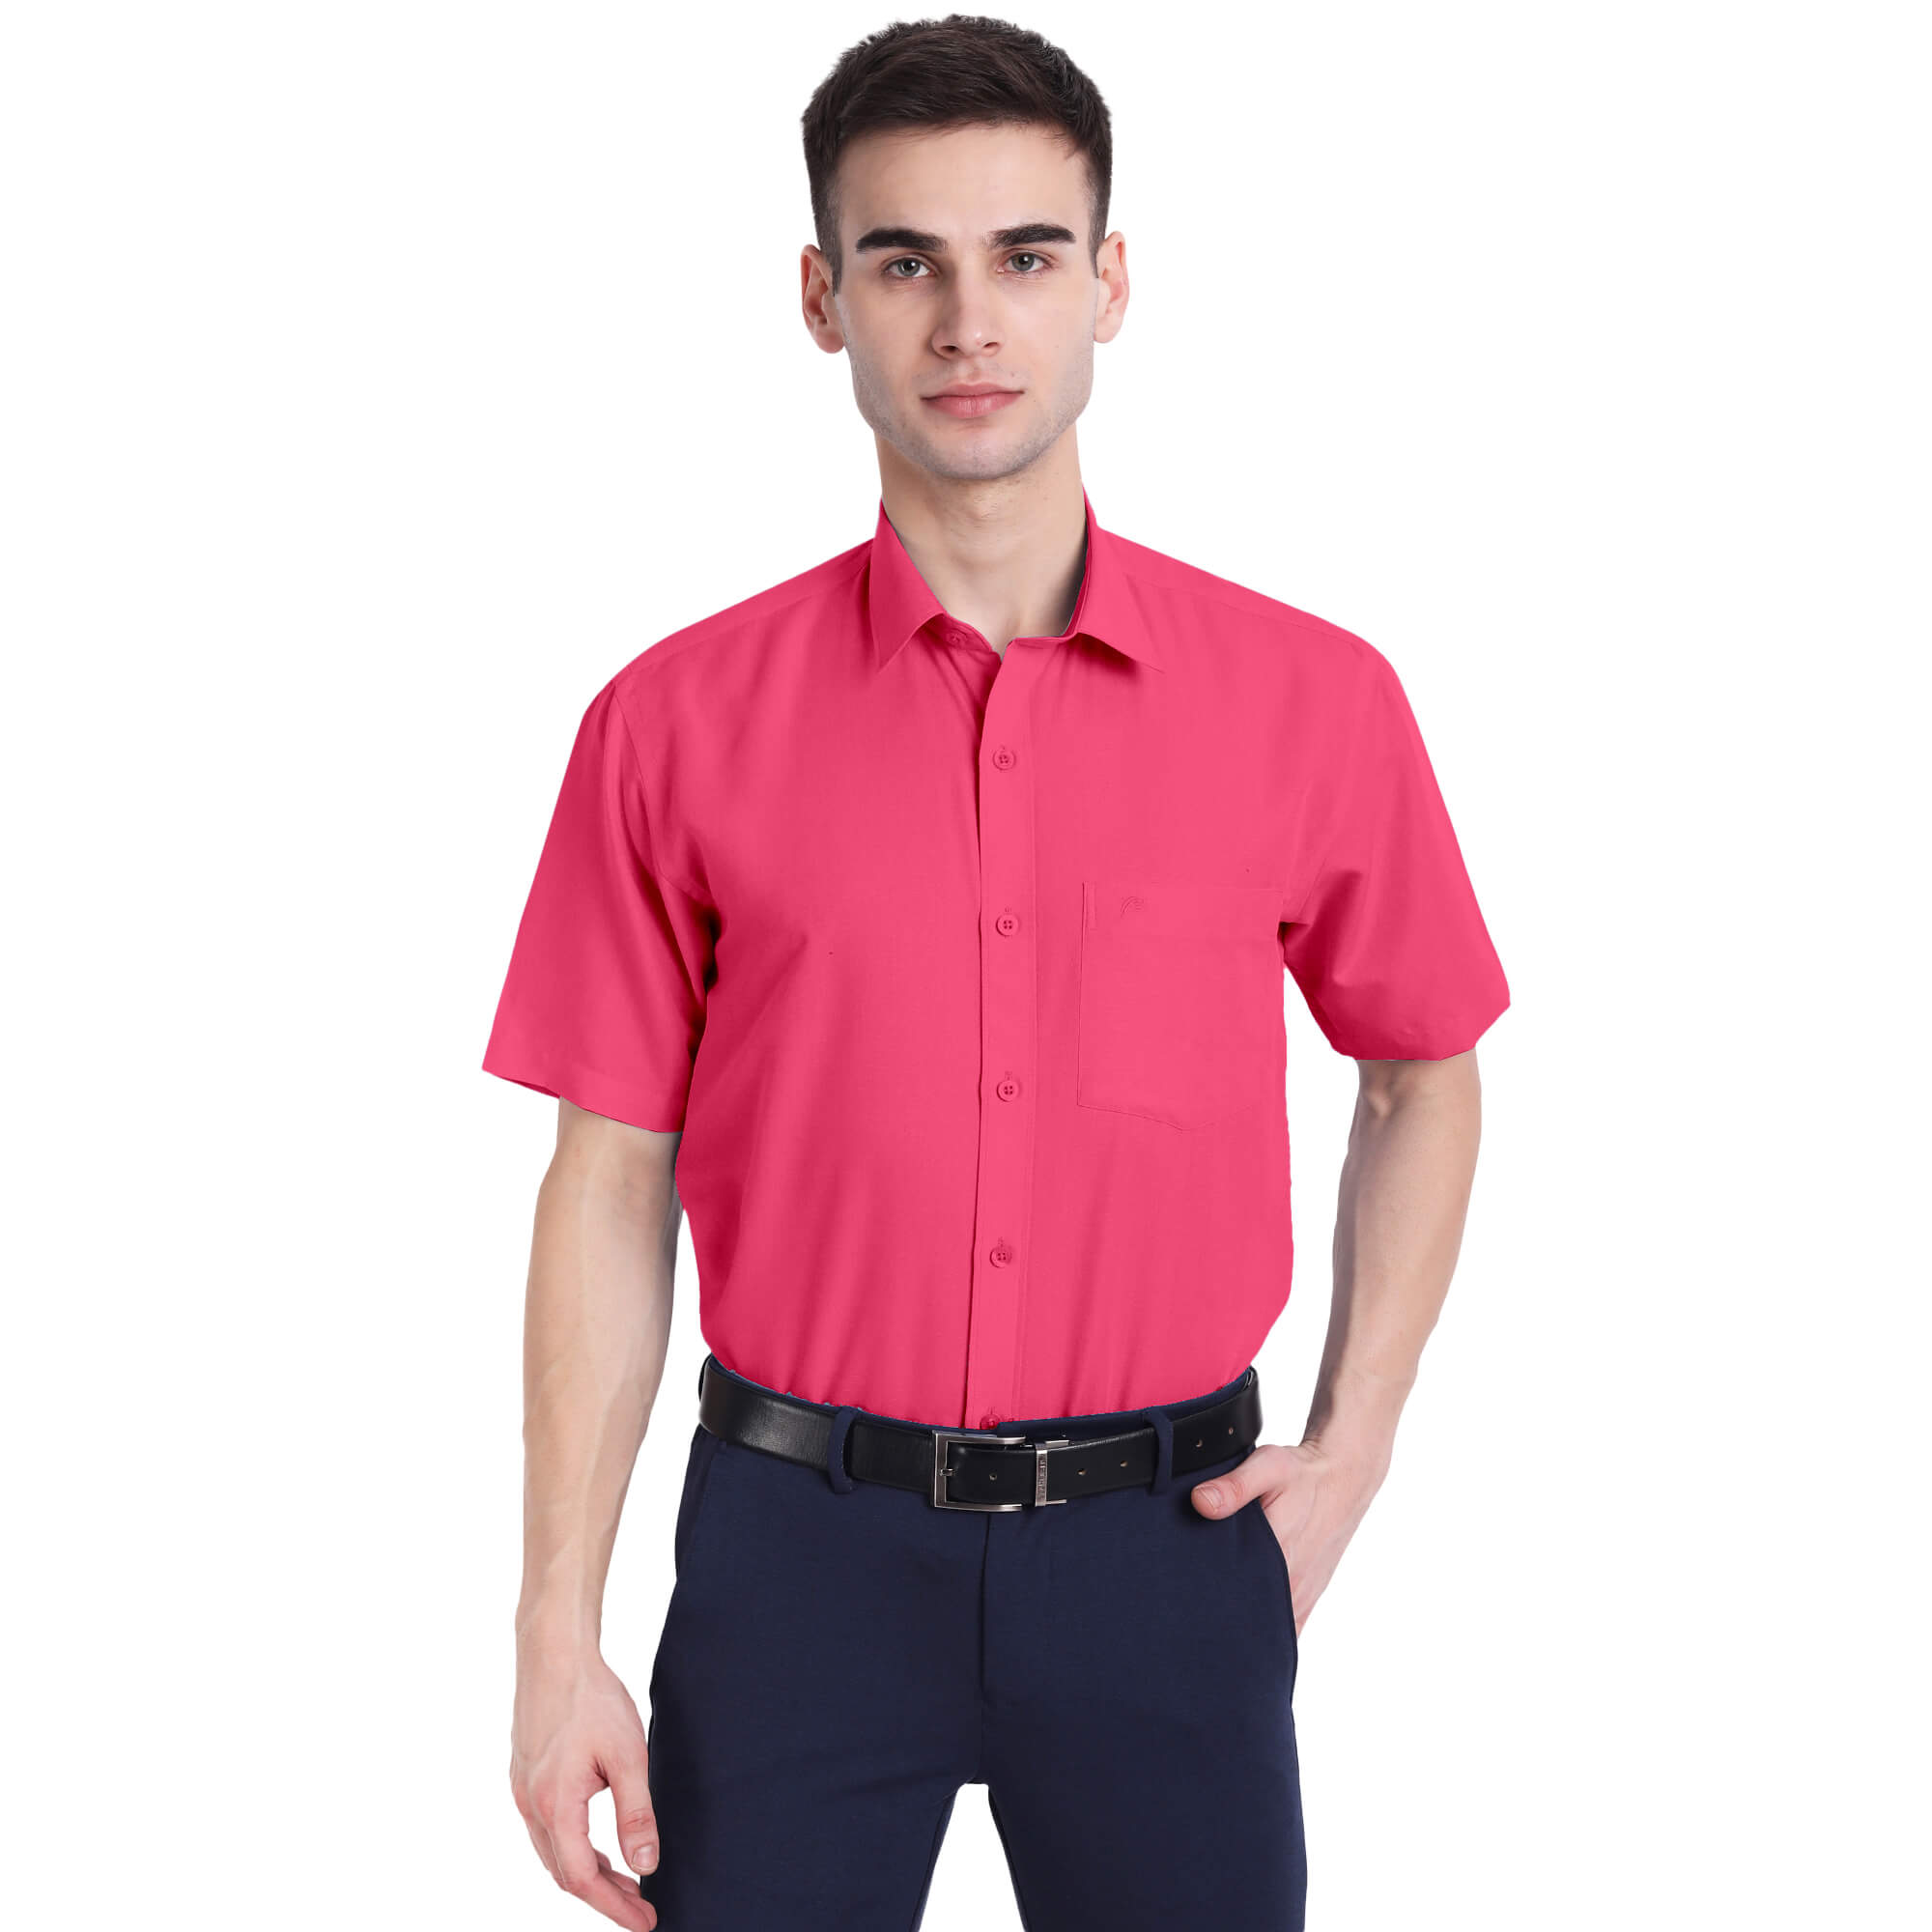 Poomer Elite Colour Shirt - Dark Pink